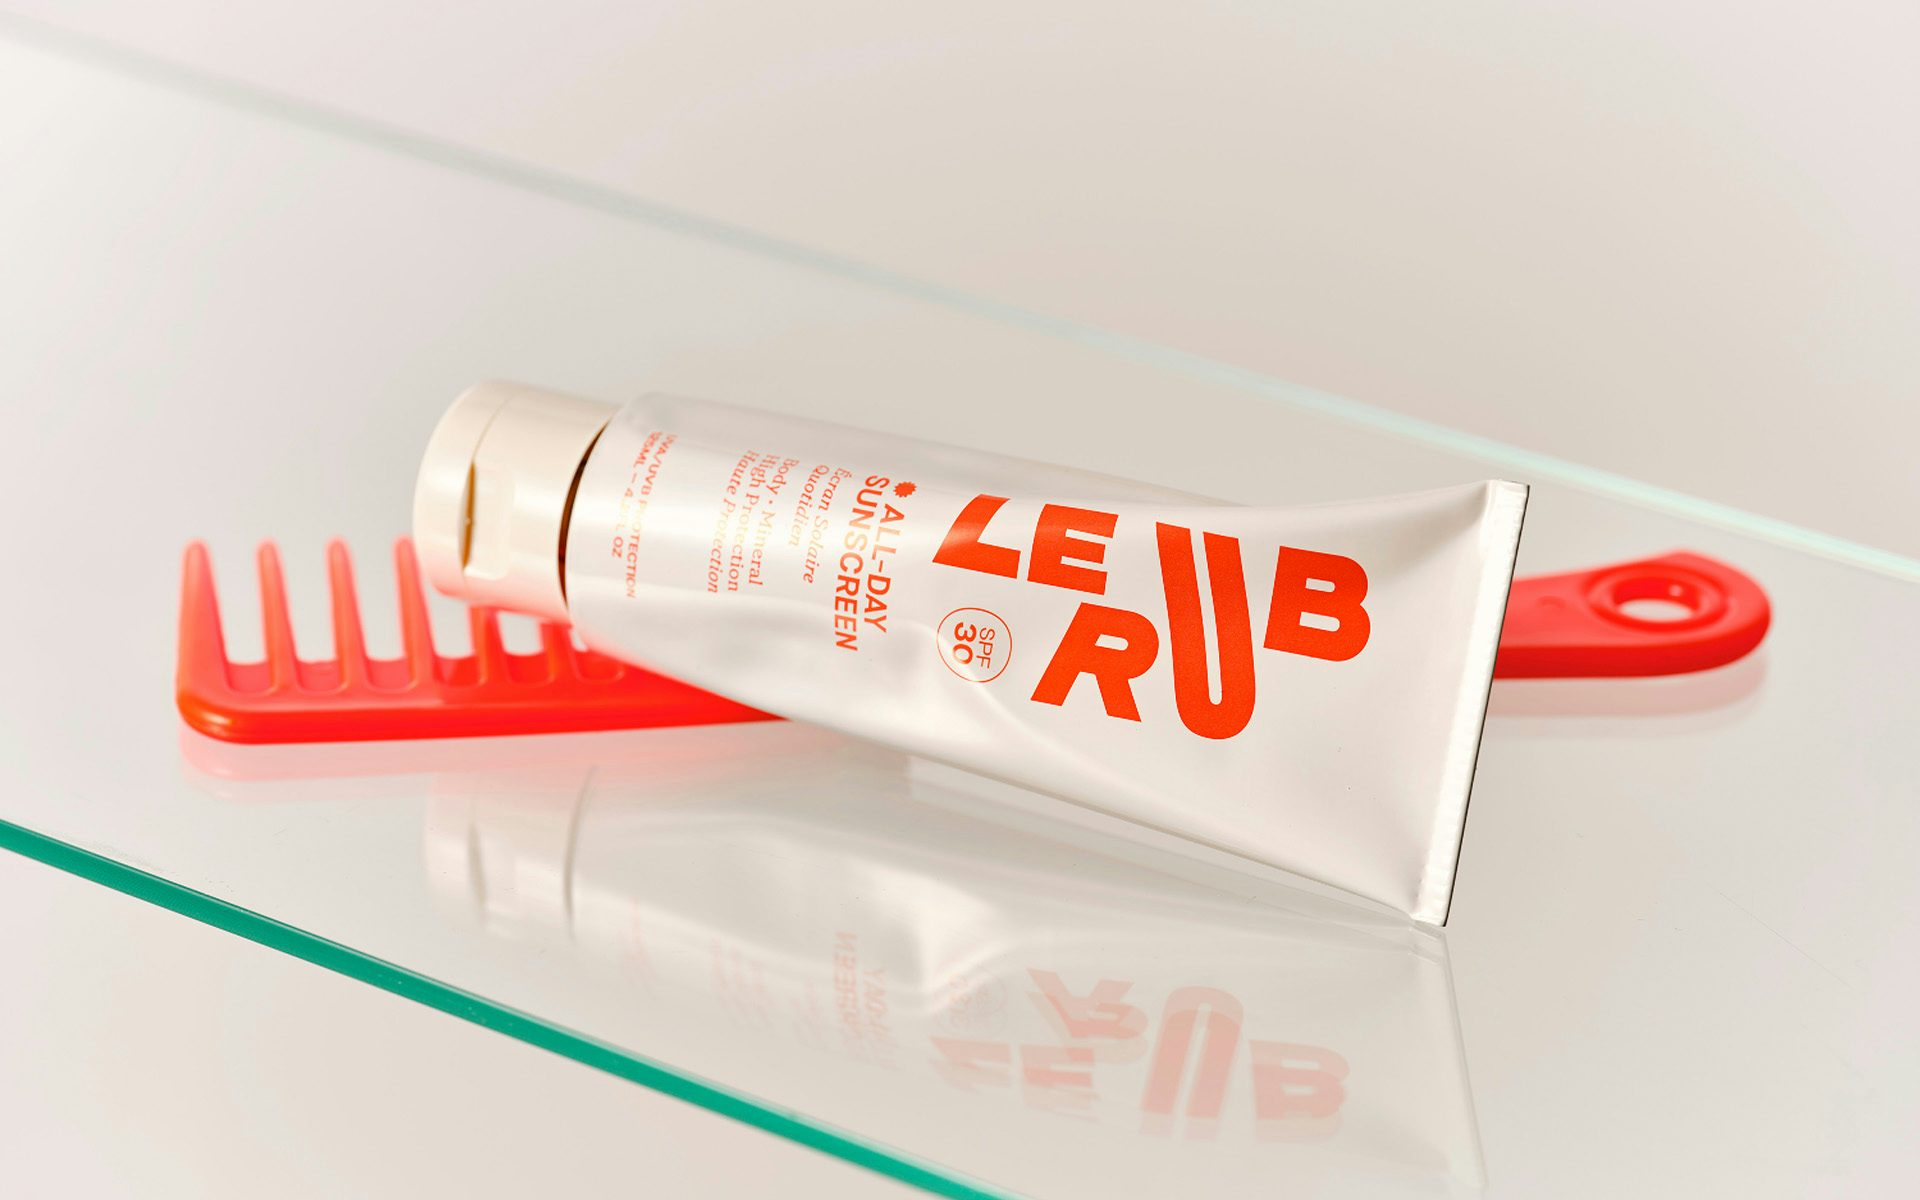 Photo of a tube of Le Rub sunscreen